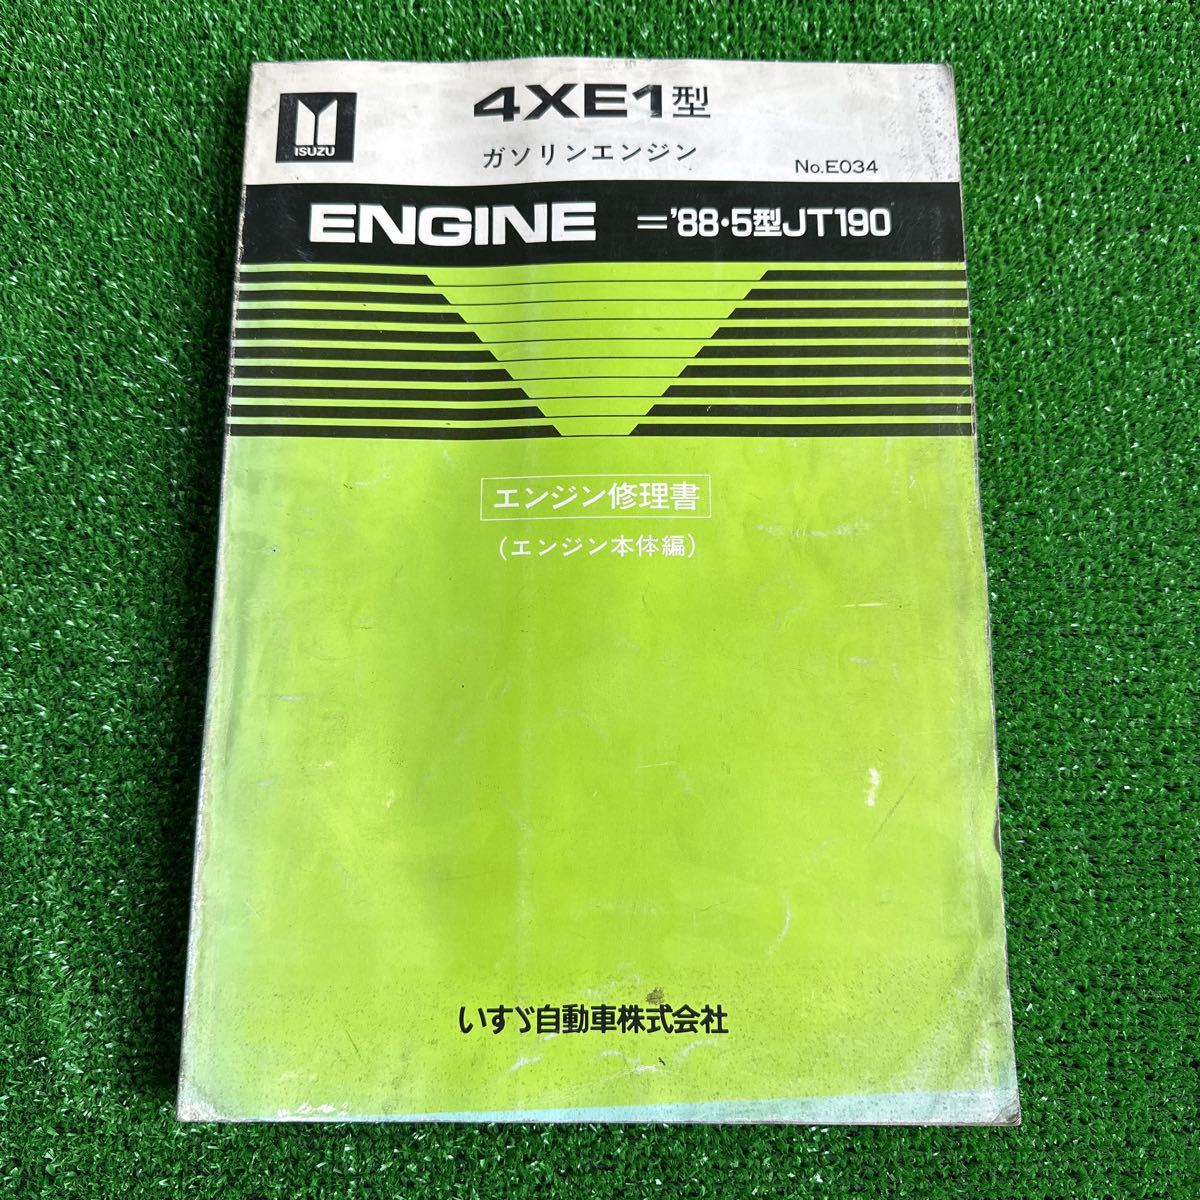 95、いすゞ　4XE1型　’88.５型JT190 ガソリンエンジン　エンジン修理書　(エンジン本体編)_画像1